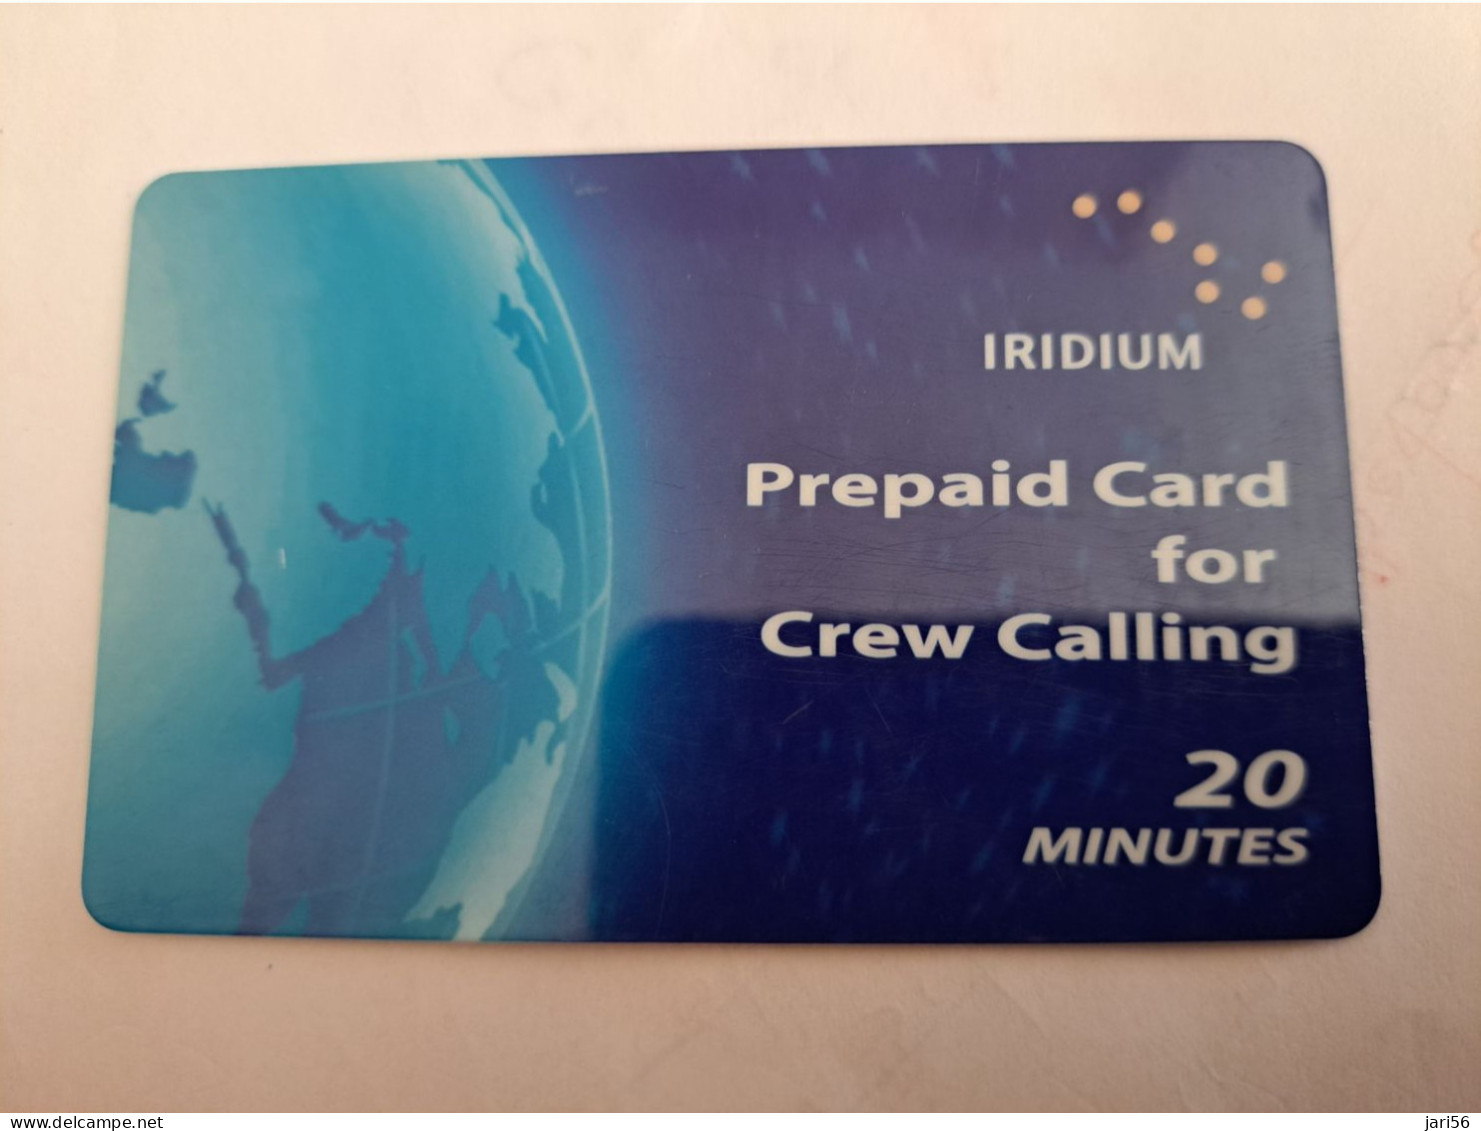 GREAT BRITAIN / IRIDIUM PREPAID/ CREW CALLING  /20 MINUTES   PREPAID CARD / USED       **14042** - [10] Sammlungen